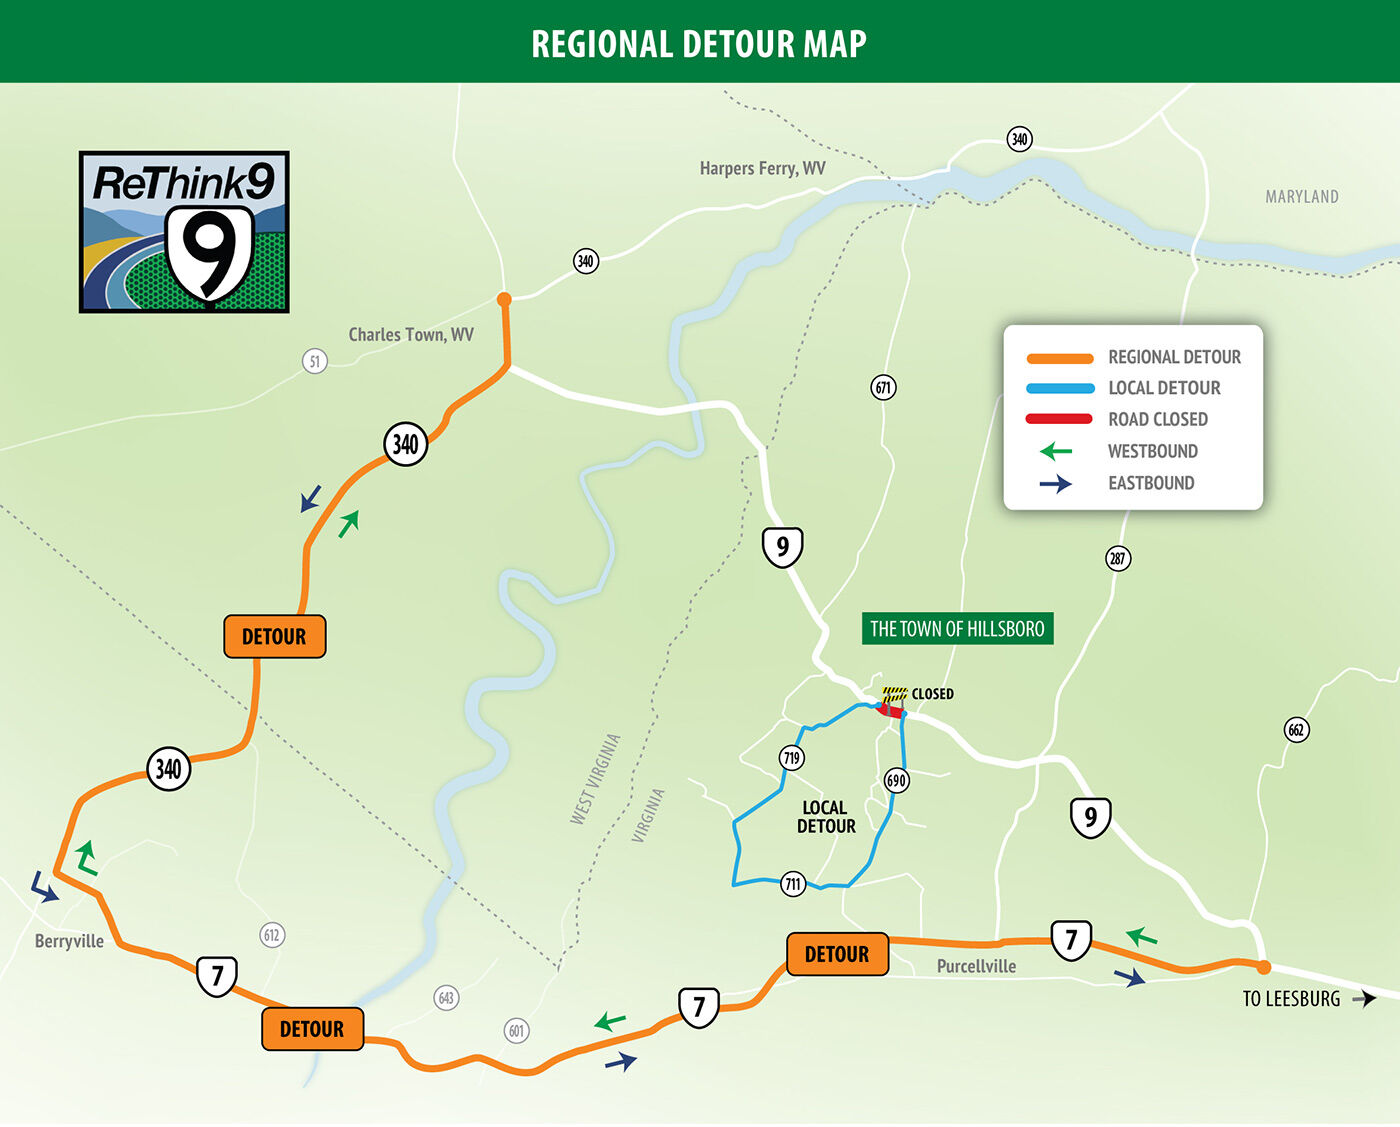 route 9 regional detour